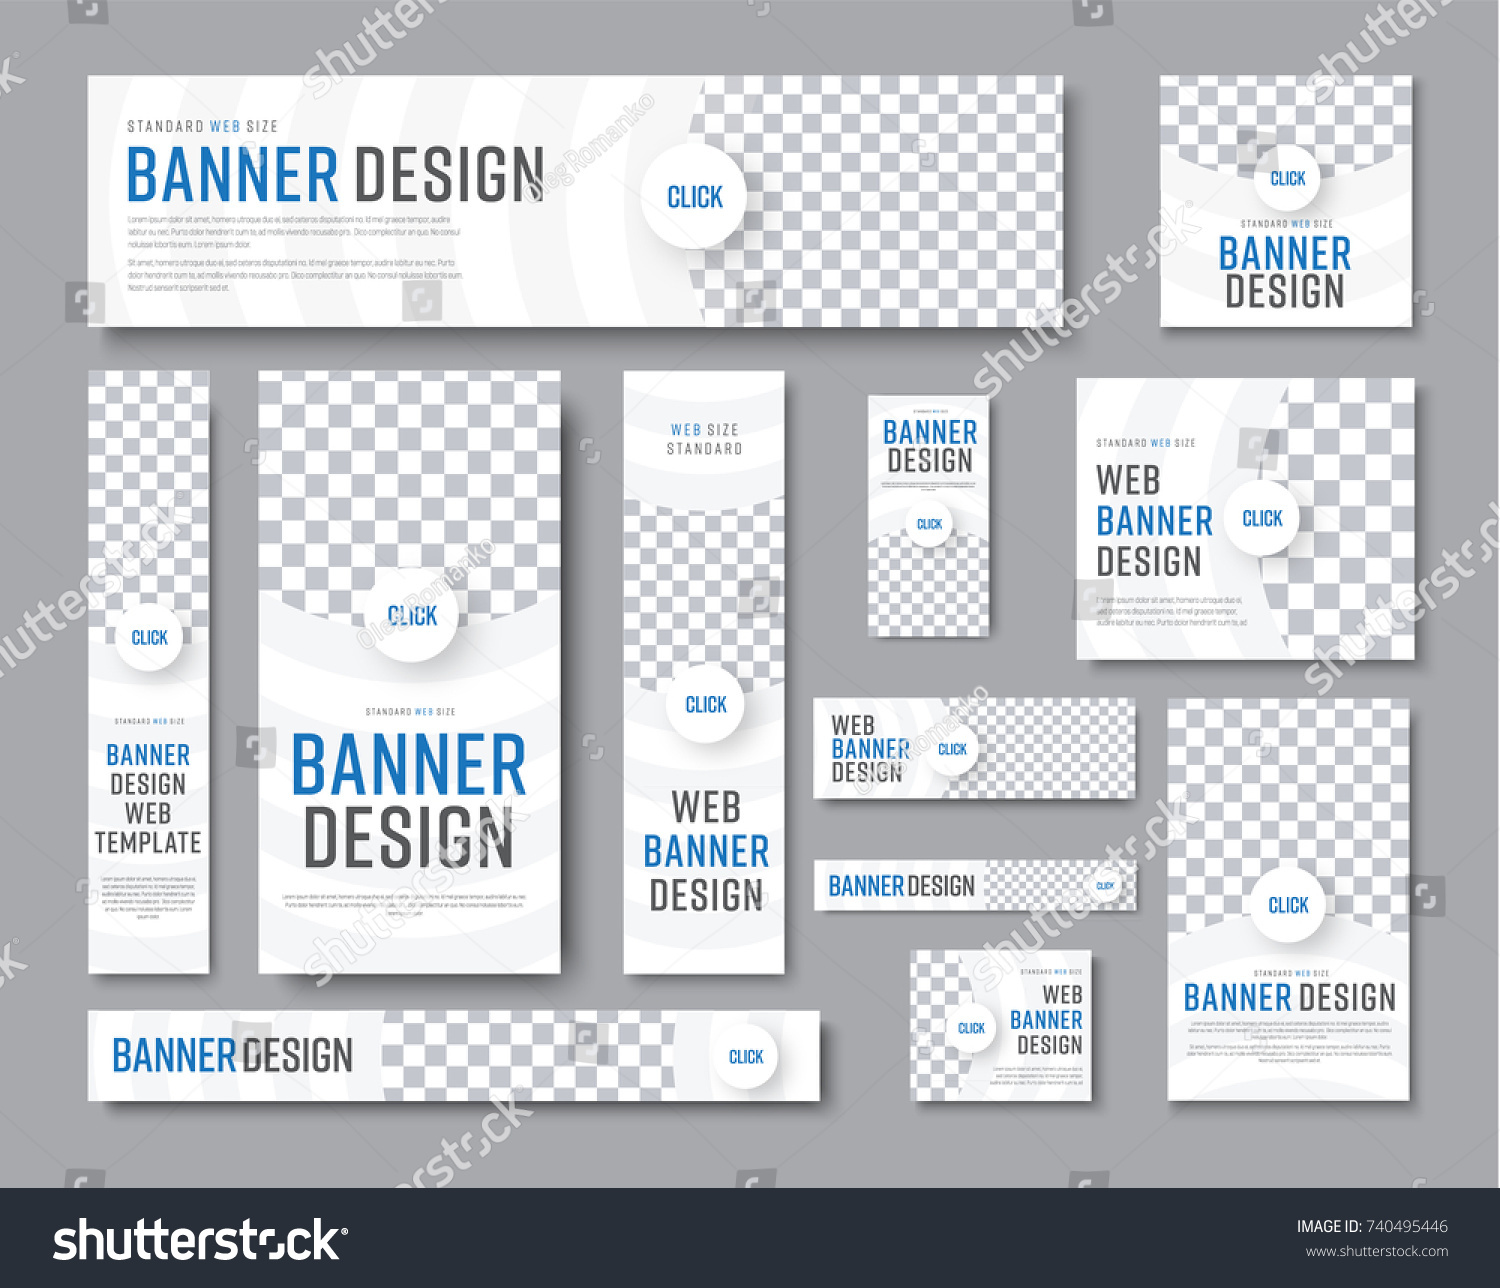 Design Vector White Banners Standard Sizes Stok Vektör ...